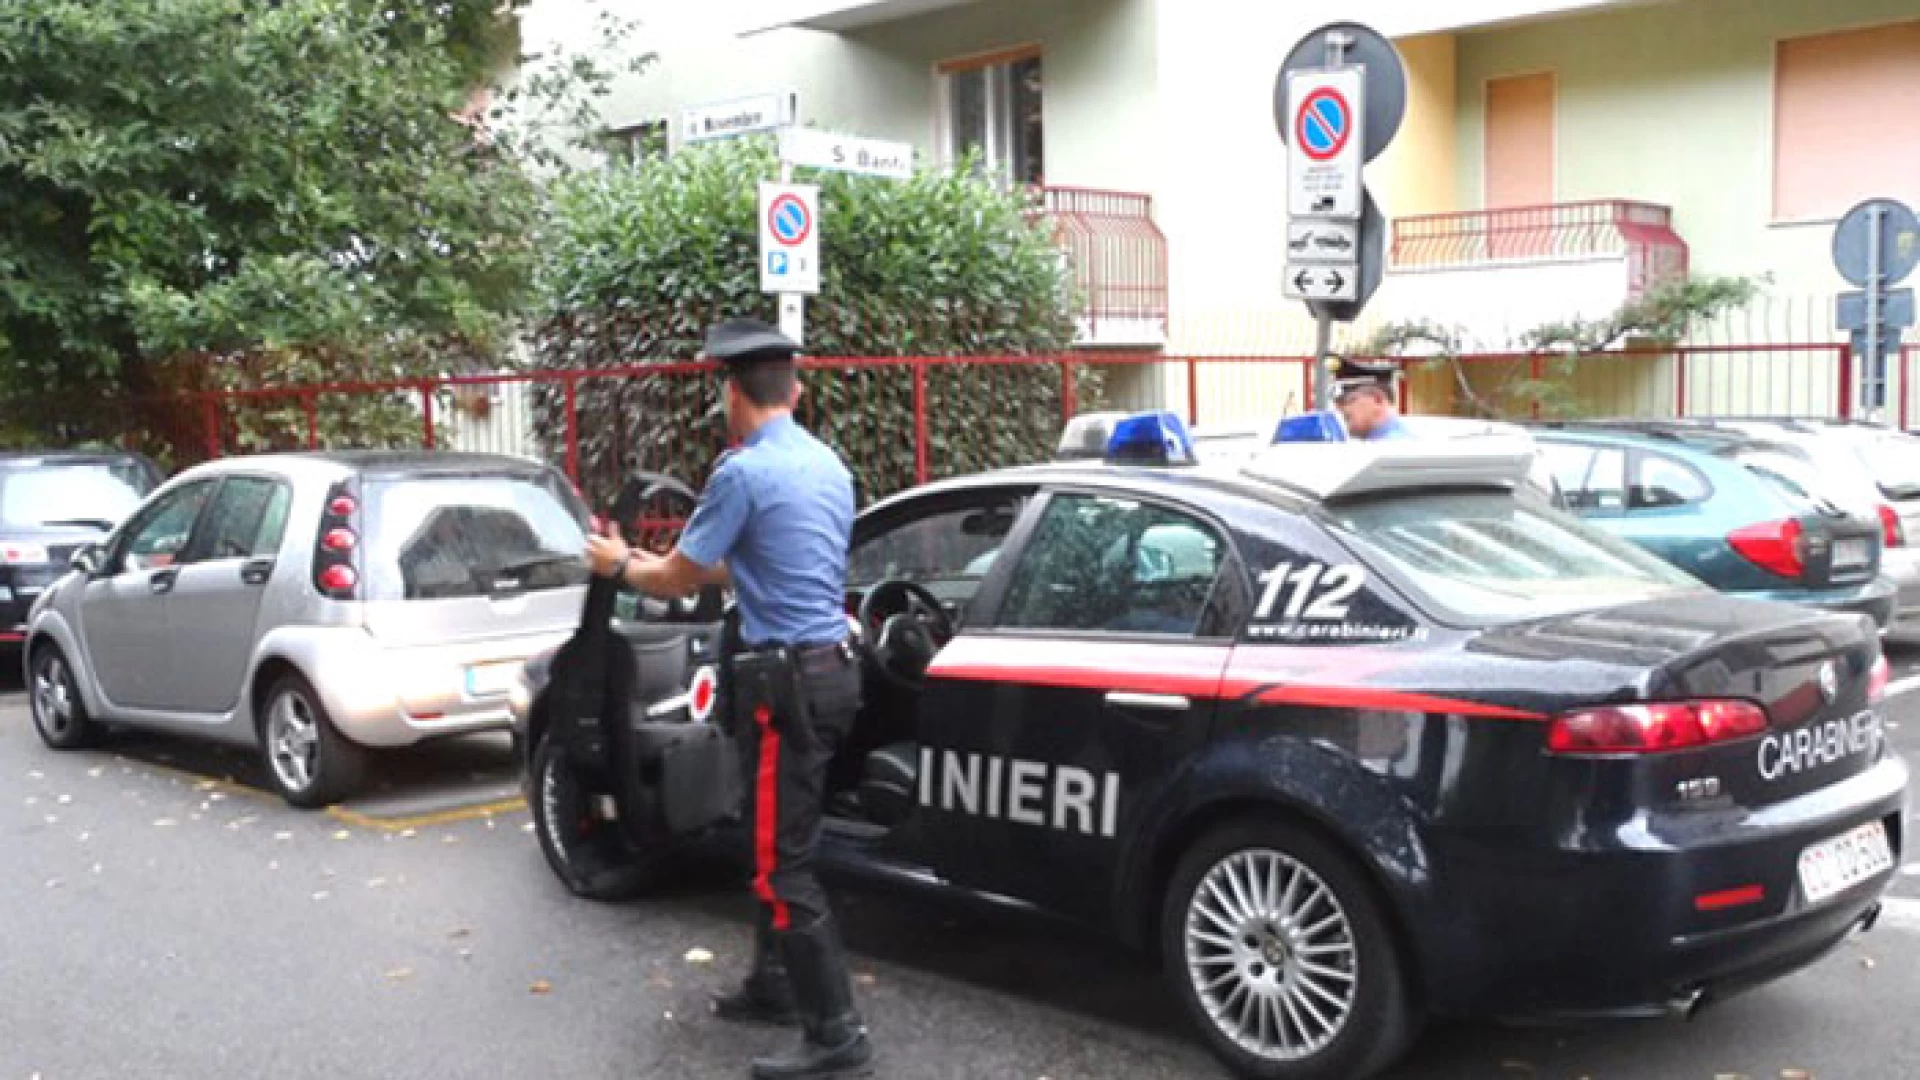 Colli a Volturno: 40enne isernino beccato alla guida dai Carabinieri con tasso alcolemico oltre la norma.